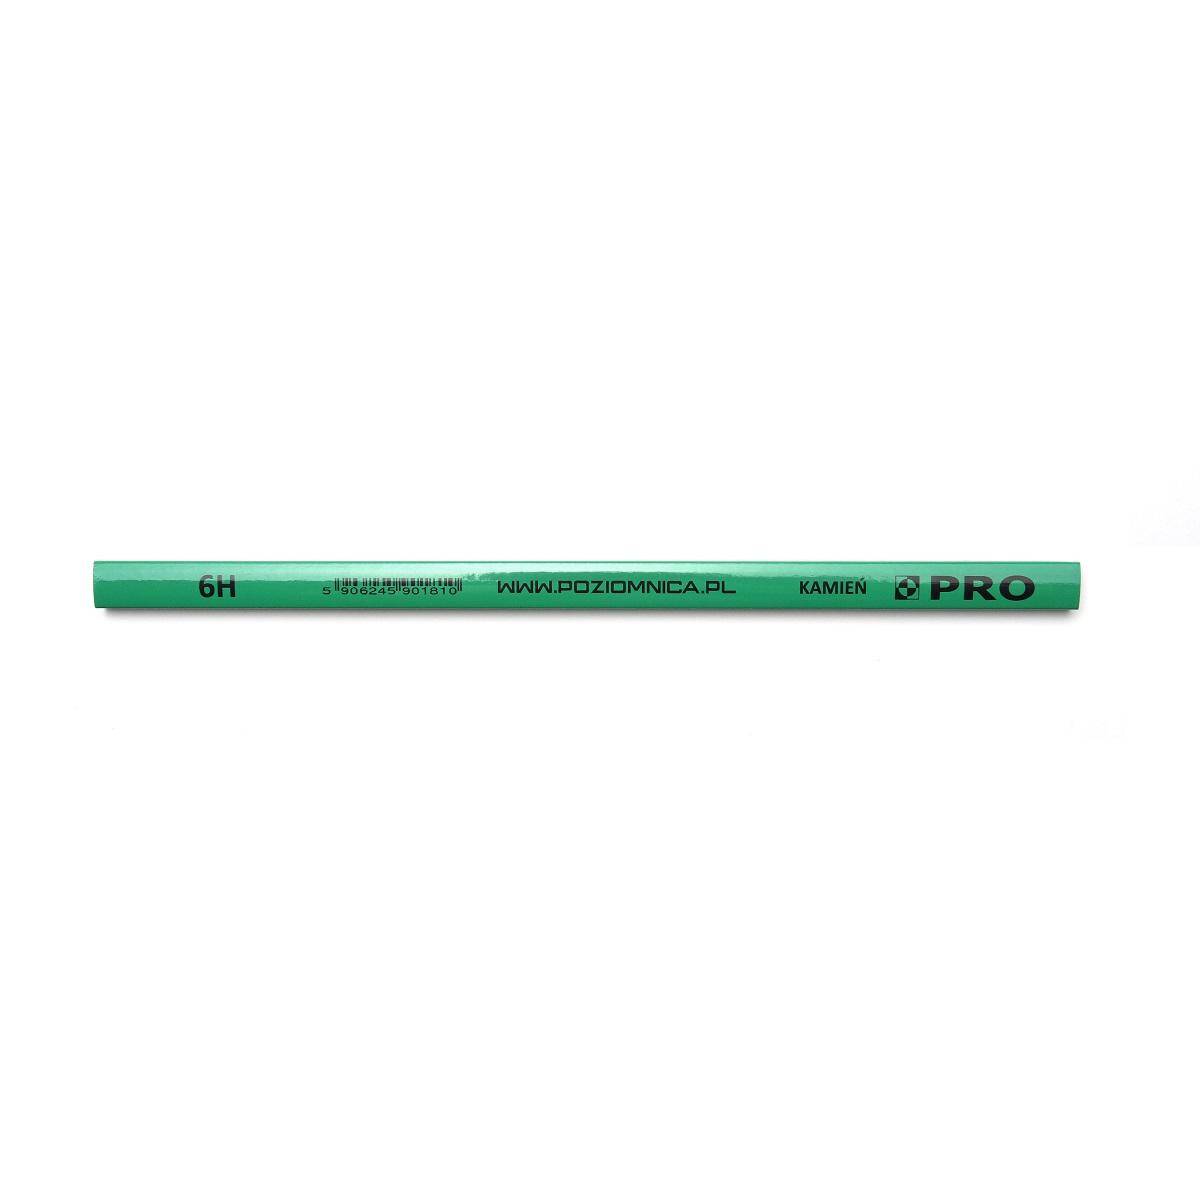 Ołówek budowlany do kamienia 240 mm zielony PRO